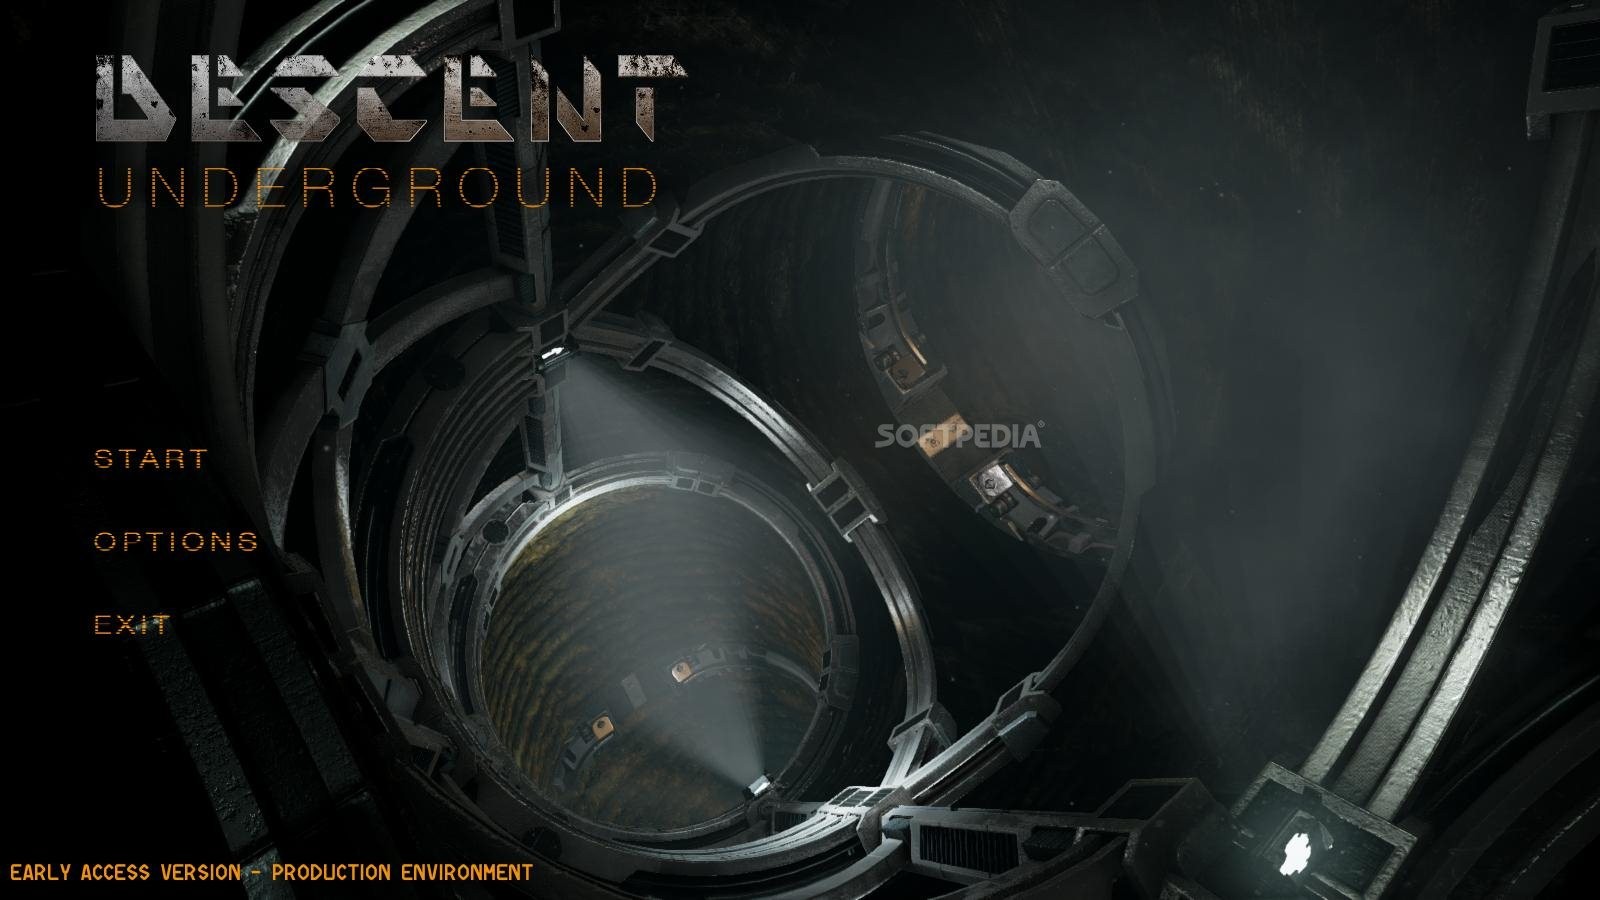 descent underground download